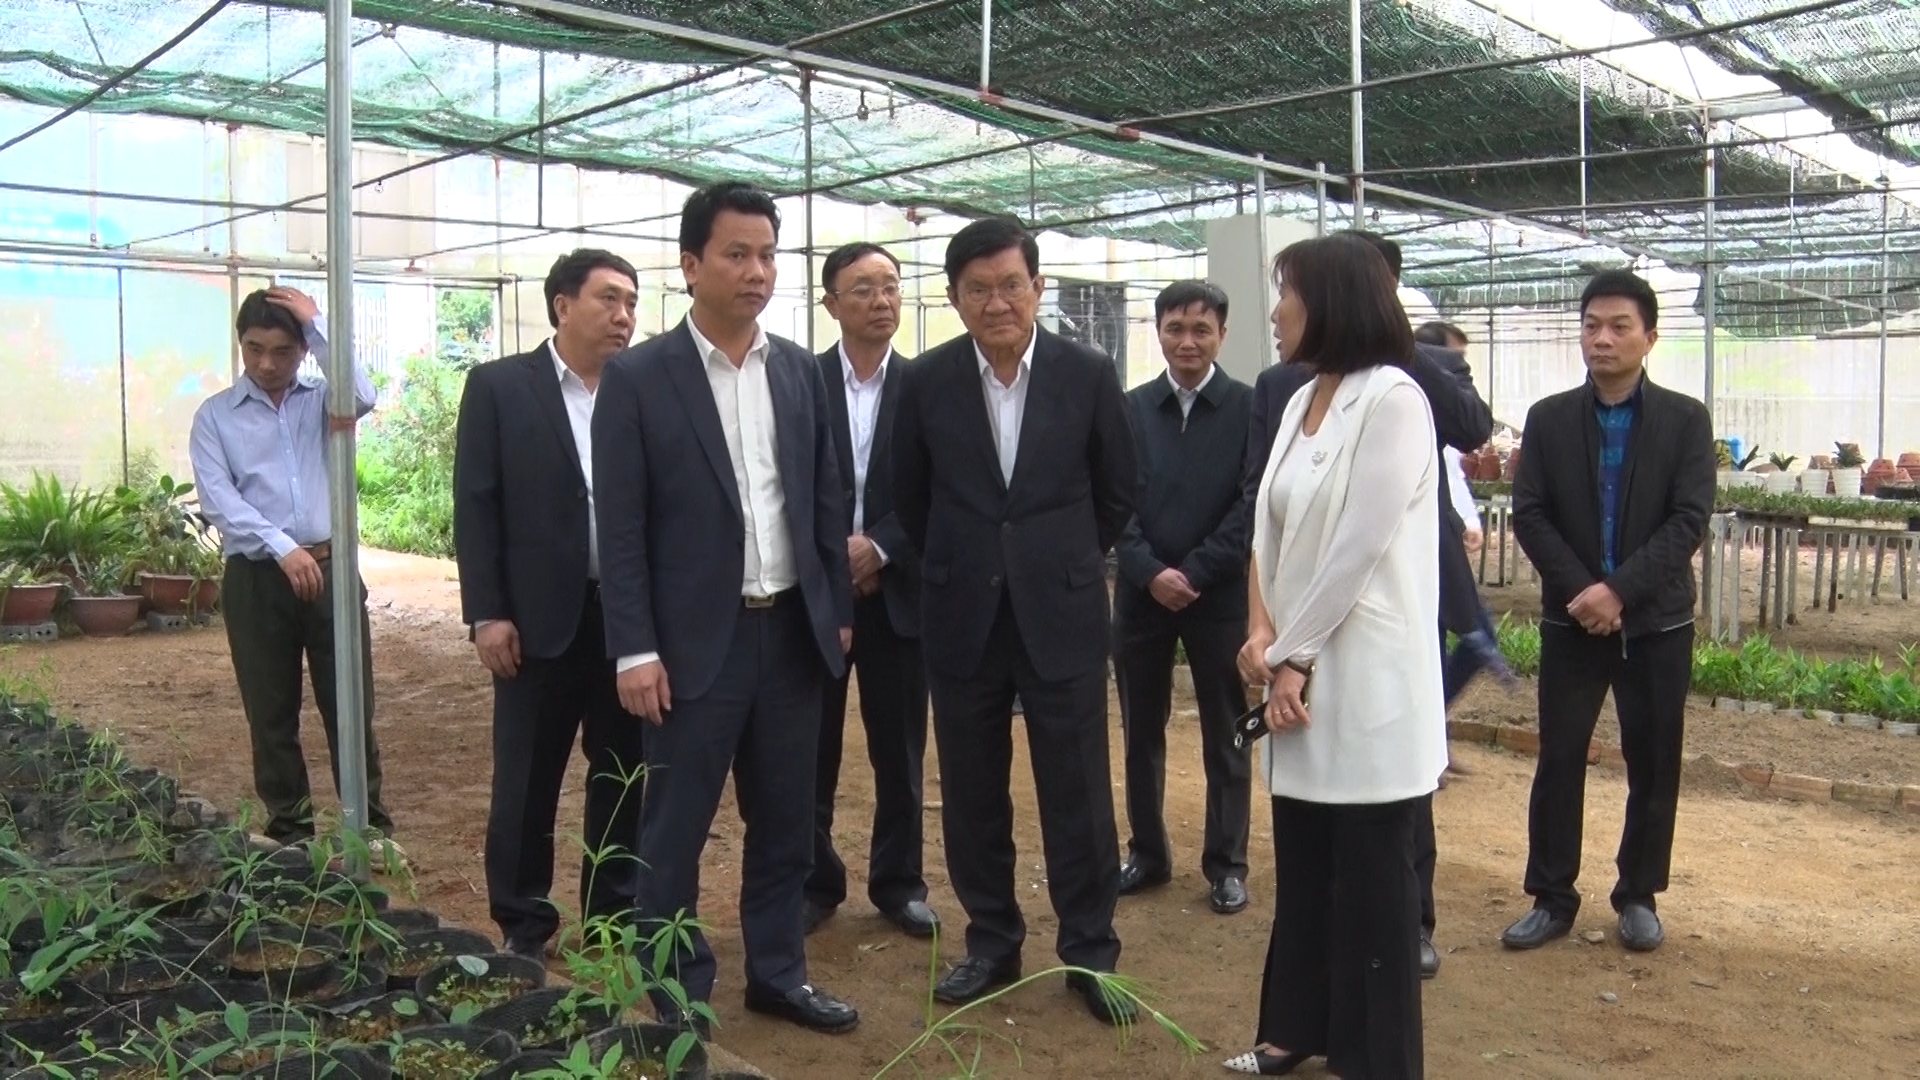 Nguyên Chủ tịch nước Trương Tấn Sang thăm vườn ươm Công ty Cổ phần phát triển Nông lâm nghiệp và môi trường Việt Nam tại huyện Vị Xuyên